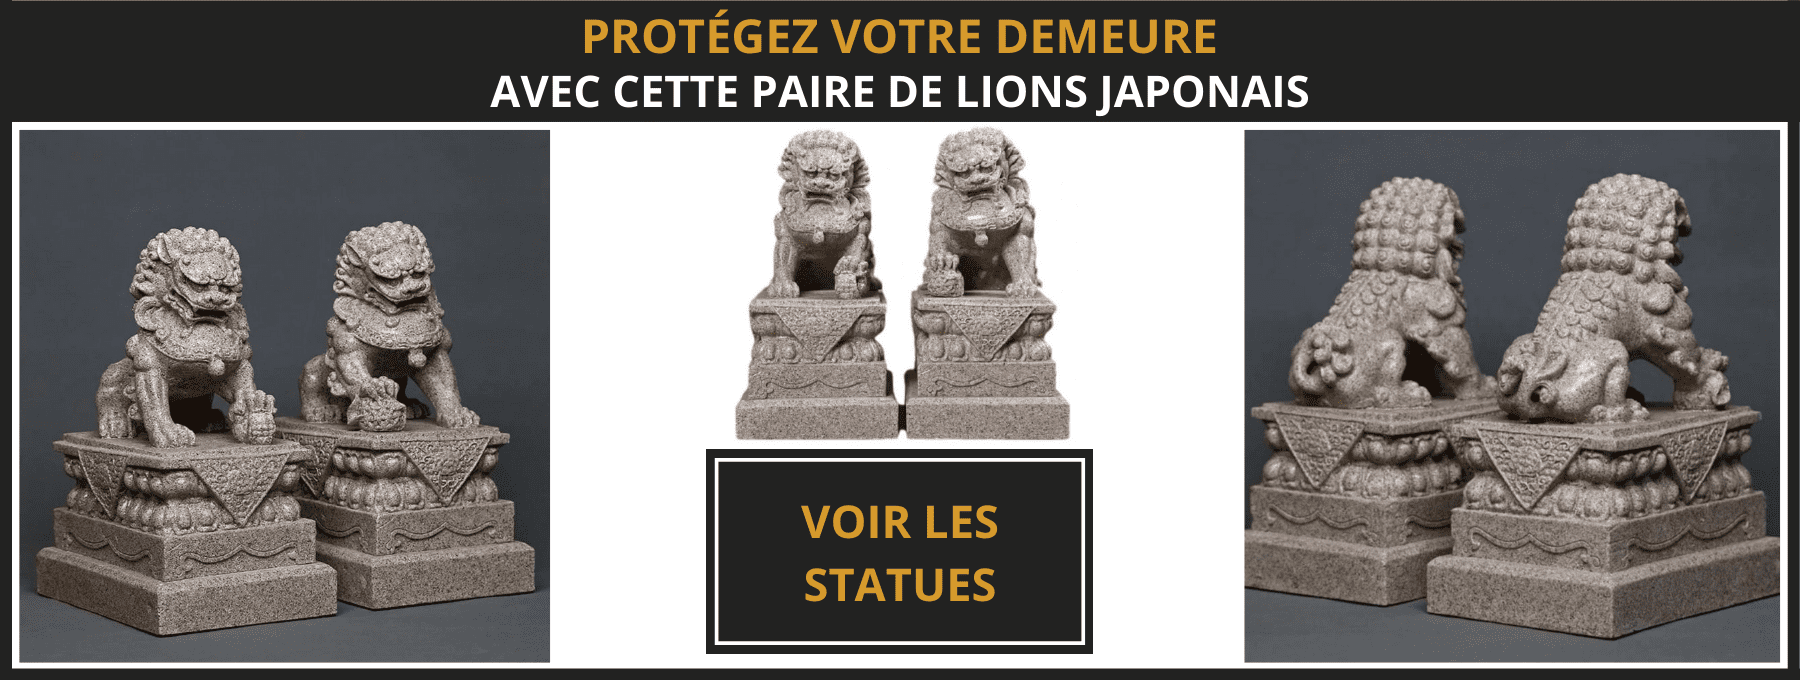 statue lion japonais